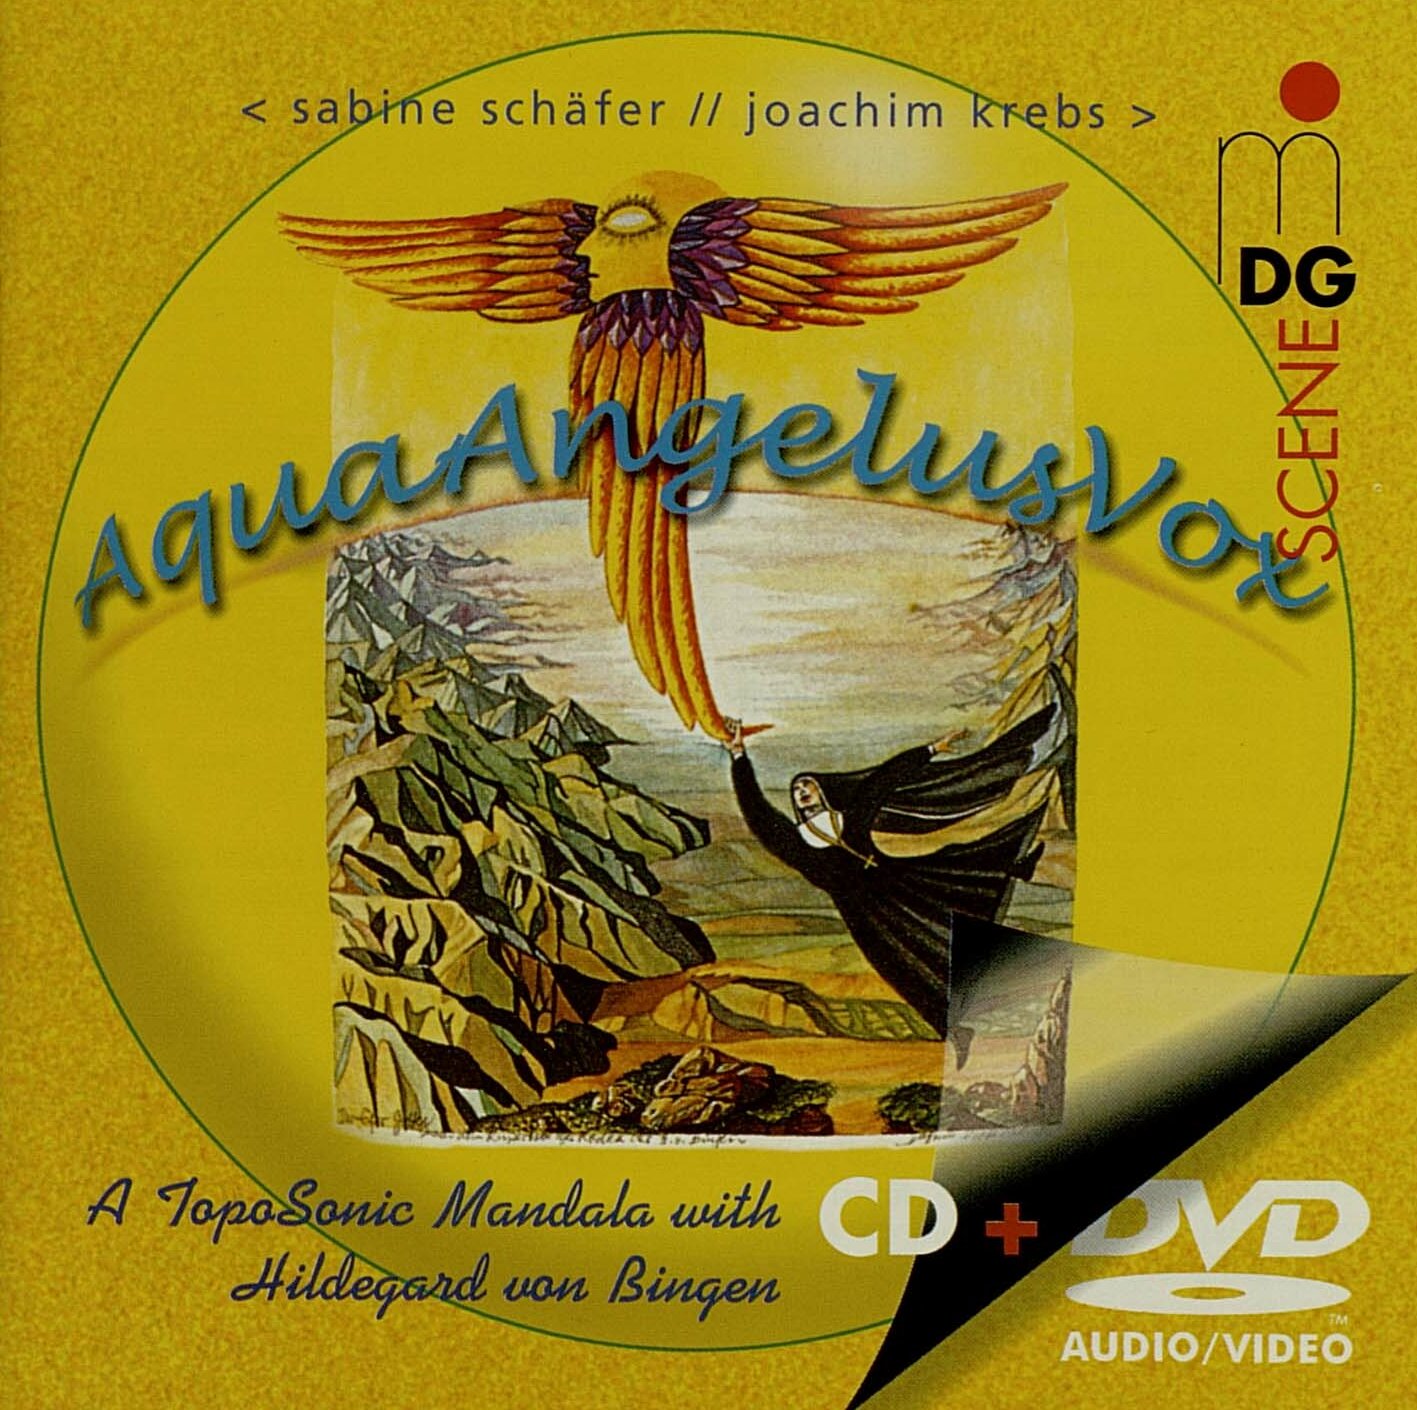 AquaAngelusVox CD/DVD Cover mit Collage und gelbem Hintergrund